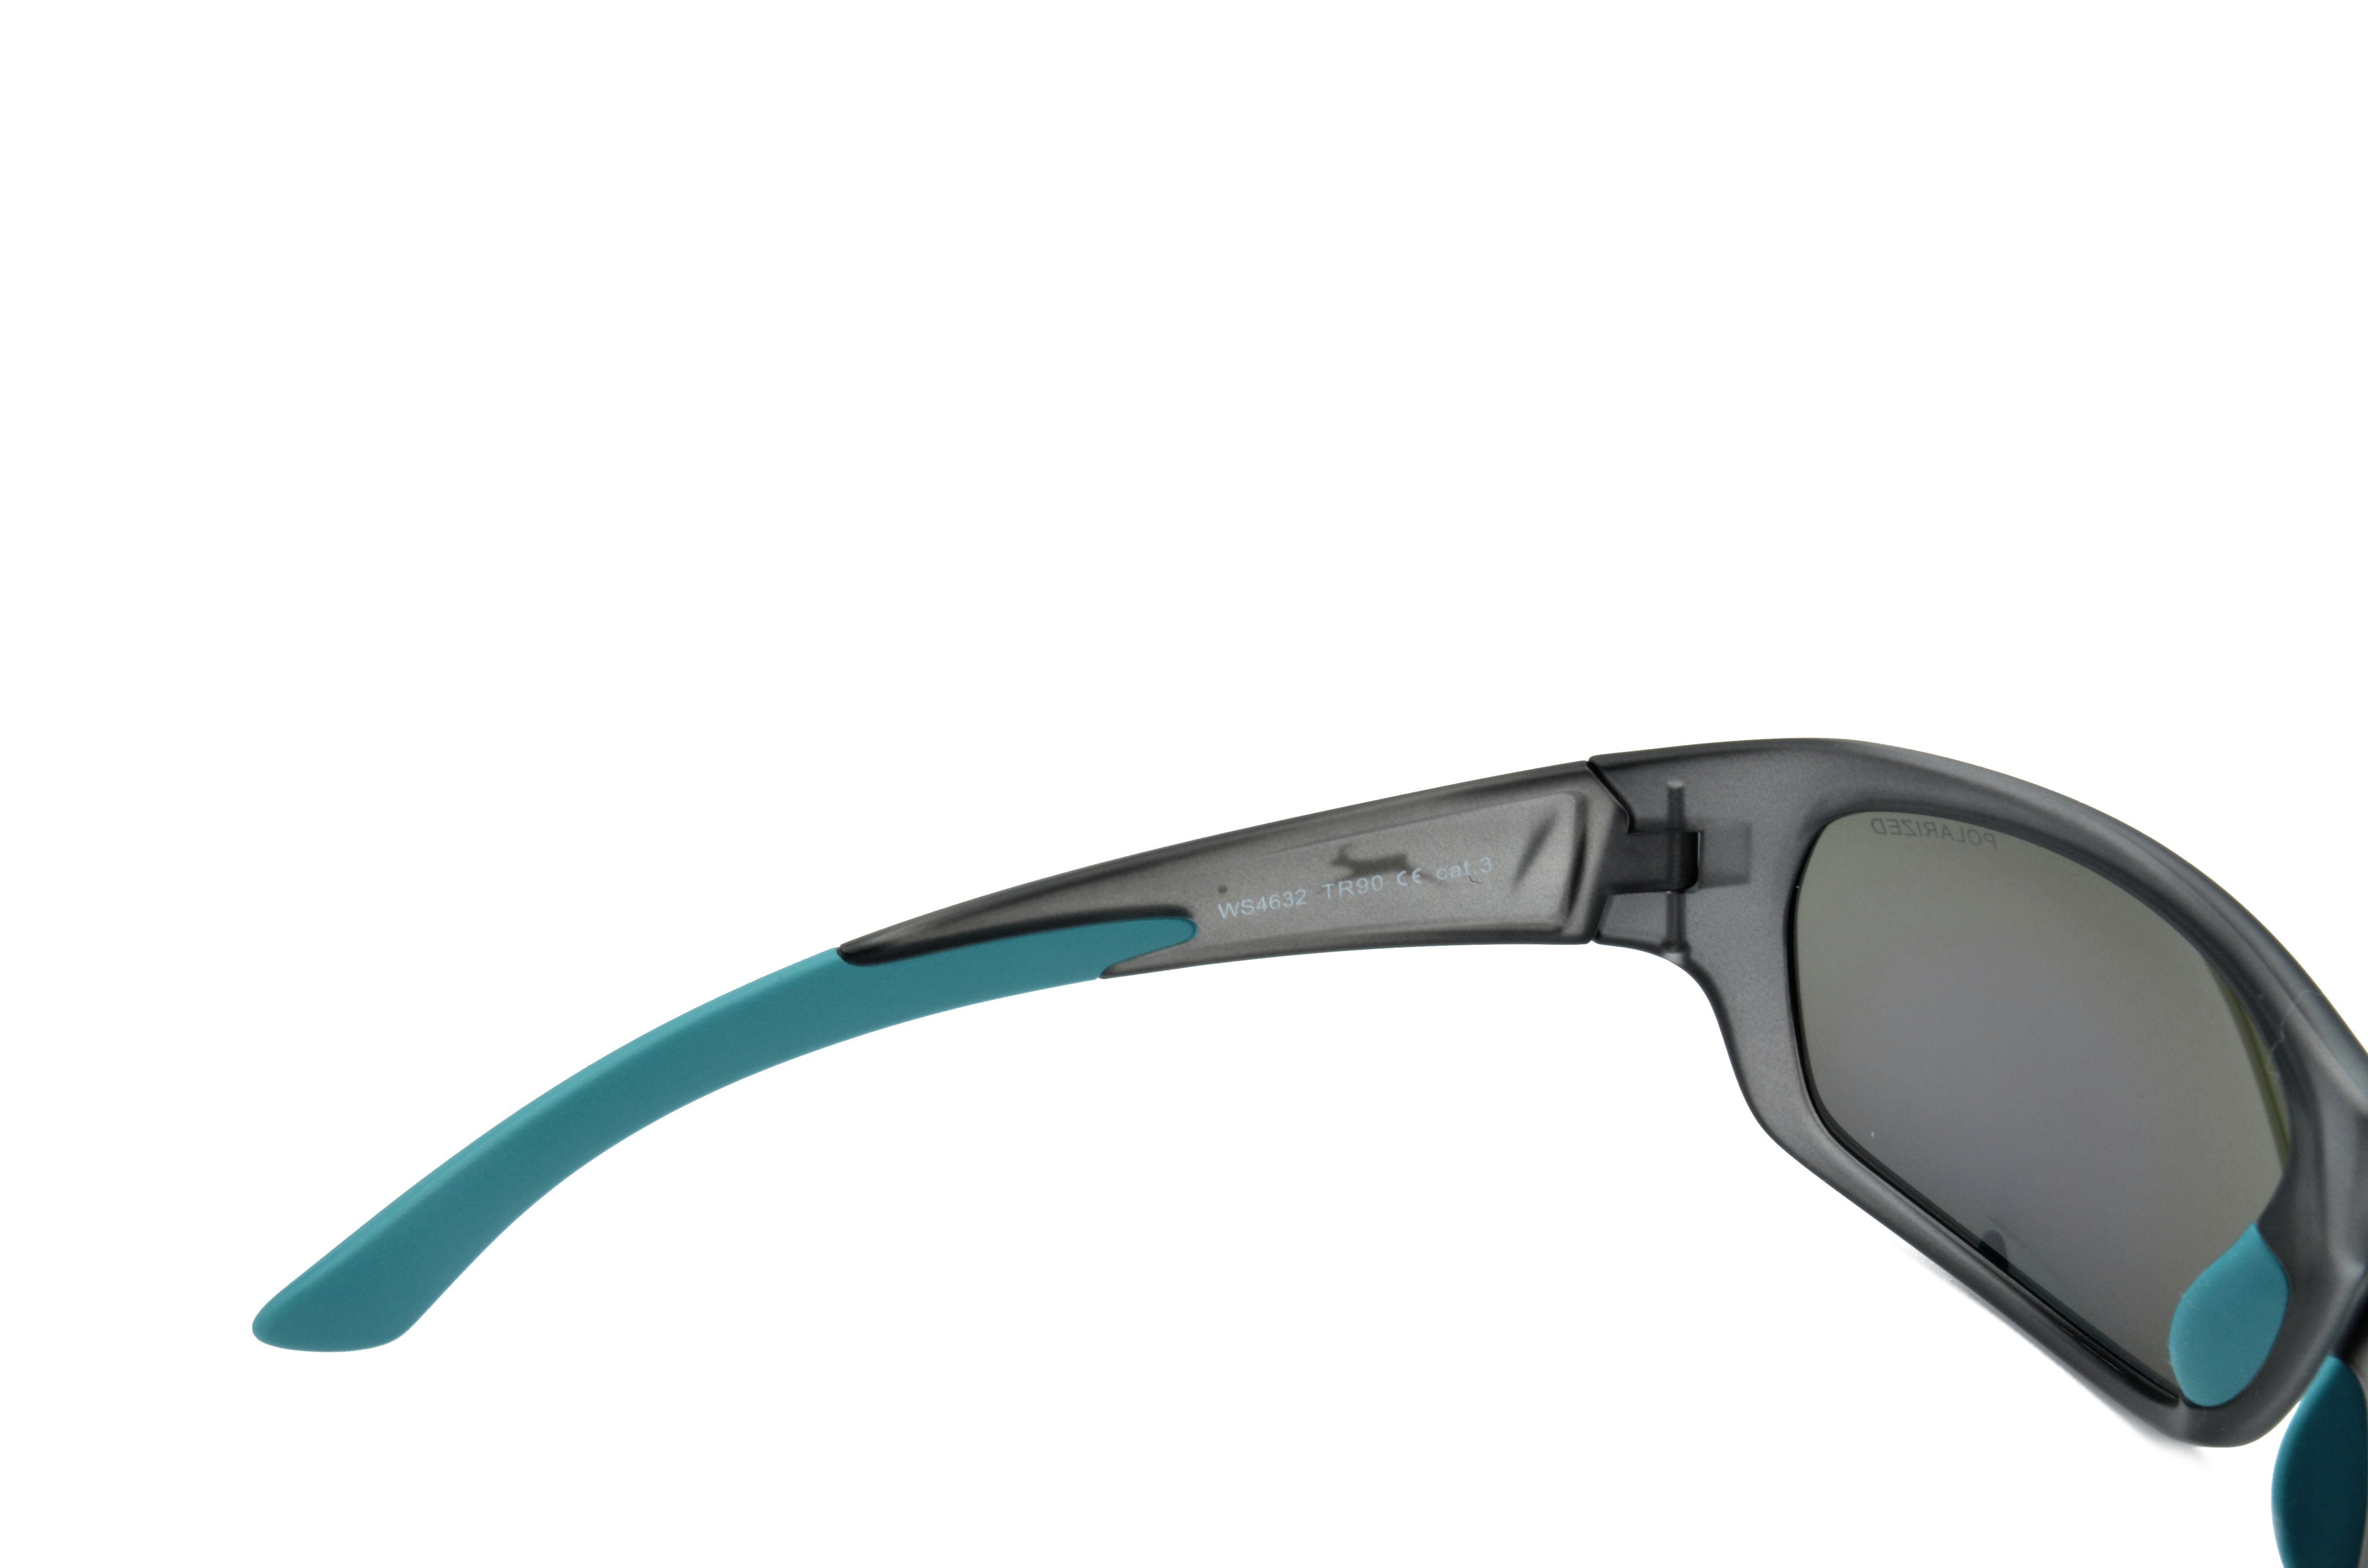 Unisex schwarz-grün, Sportbrille Skibrille blau-grau Fahrradbrille WS4632 amber, grau_grün polarisiert, Gamswild TR90, Herren Sonnenbrille beere-pink, Damen